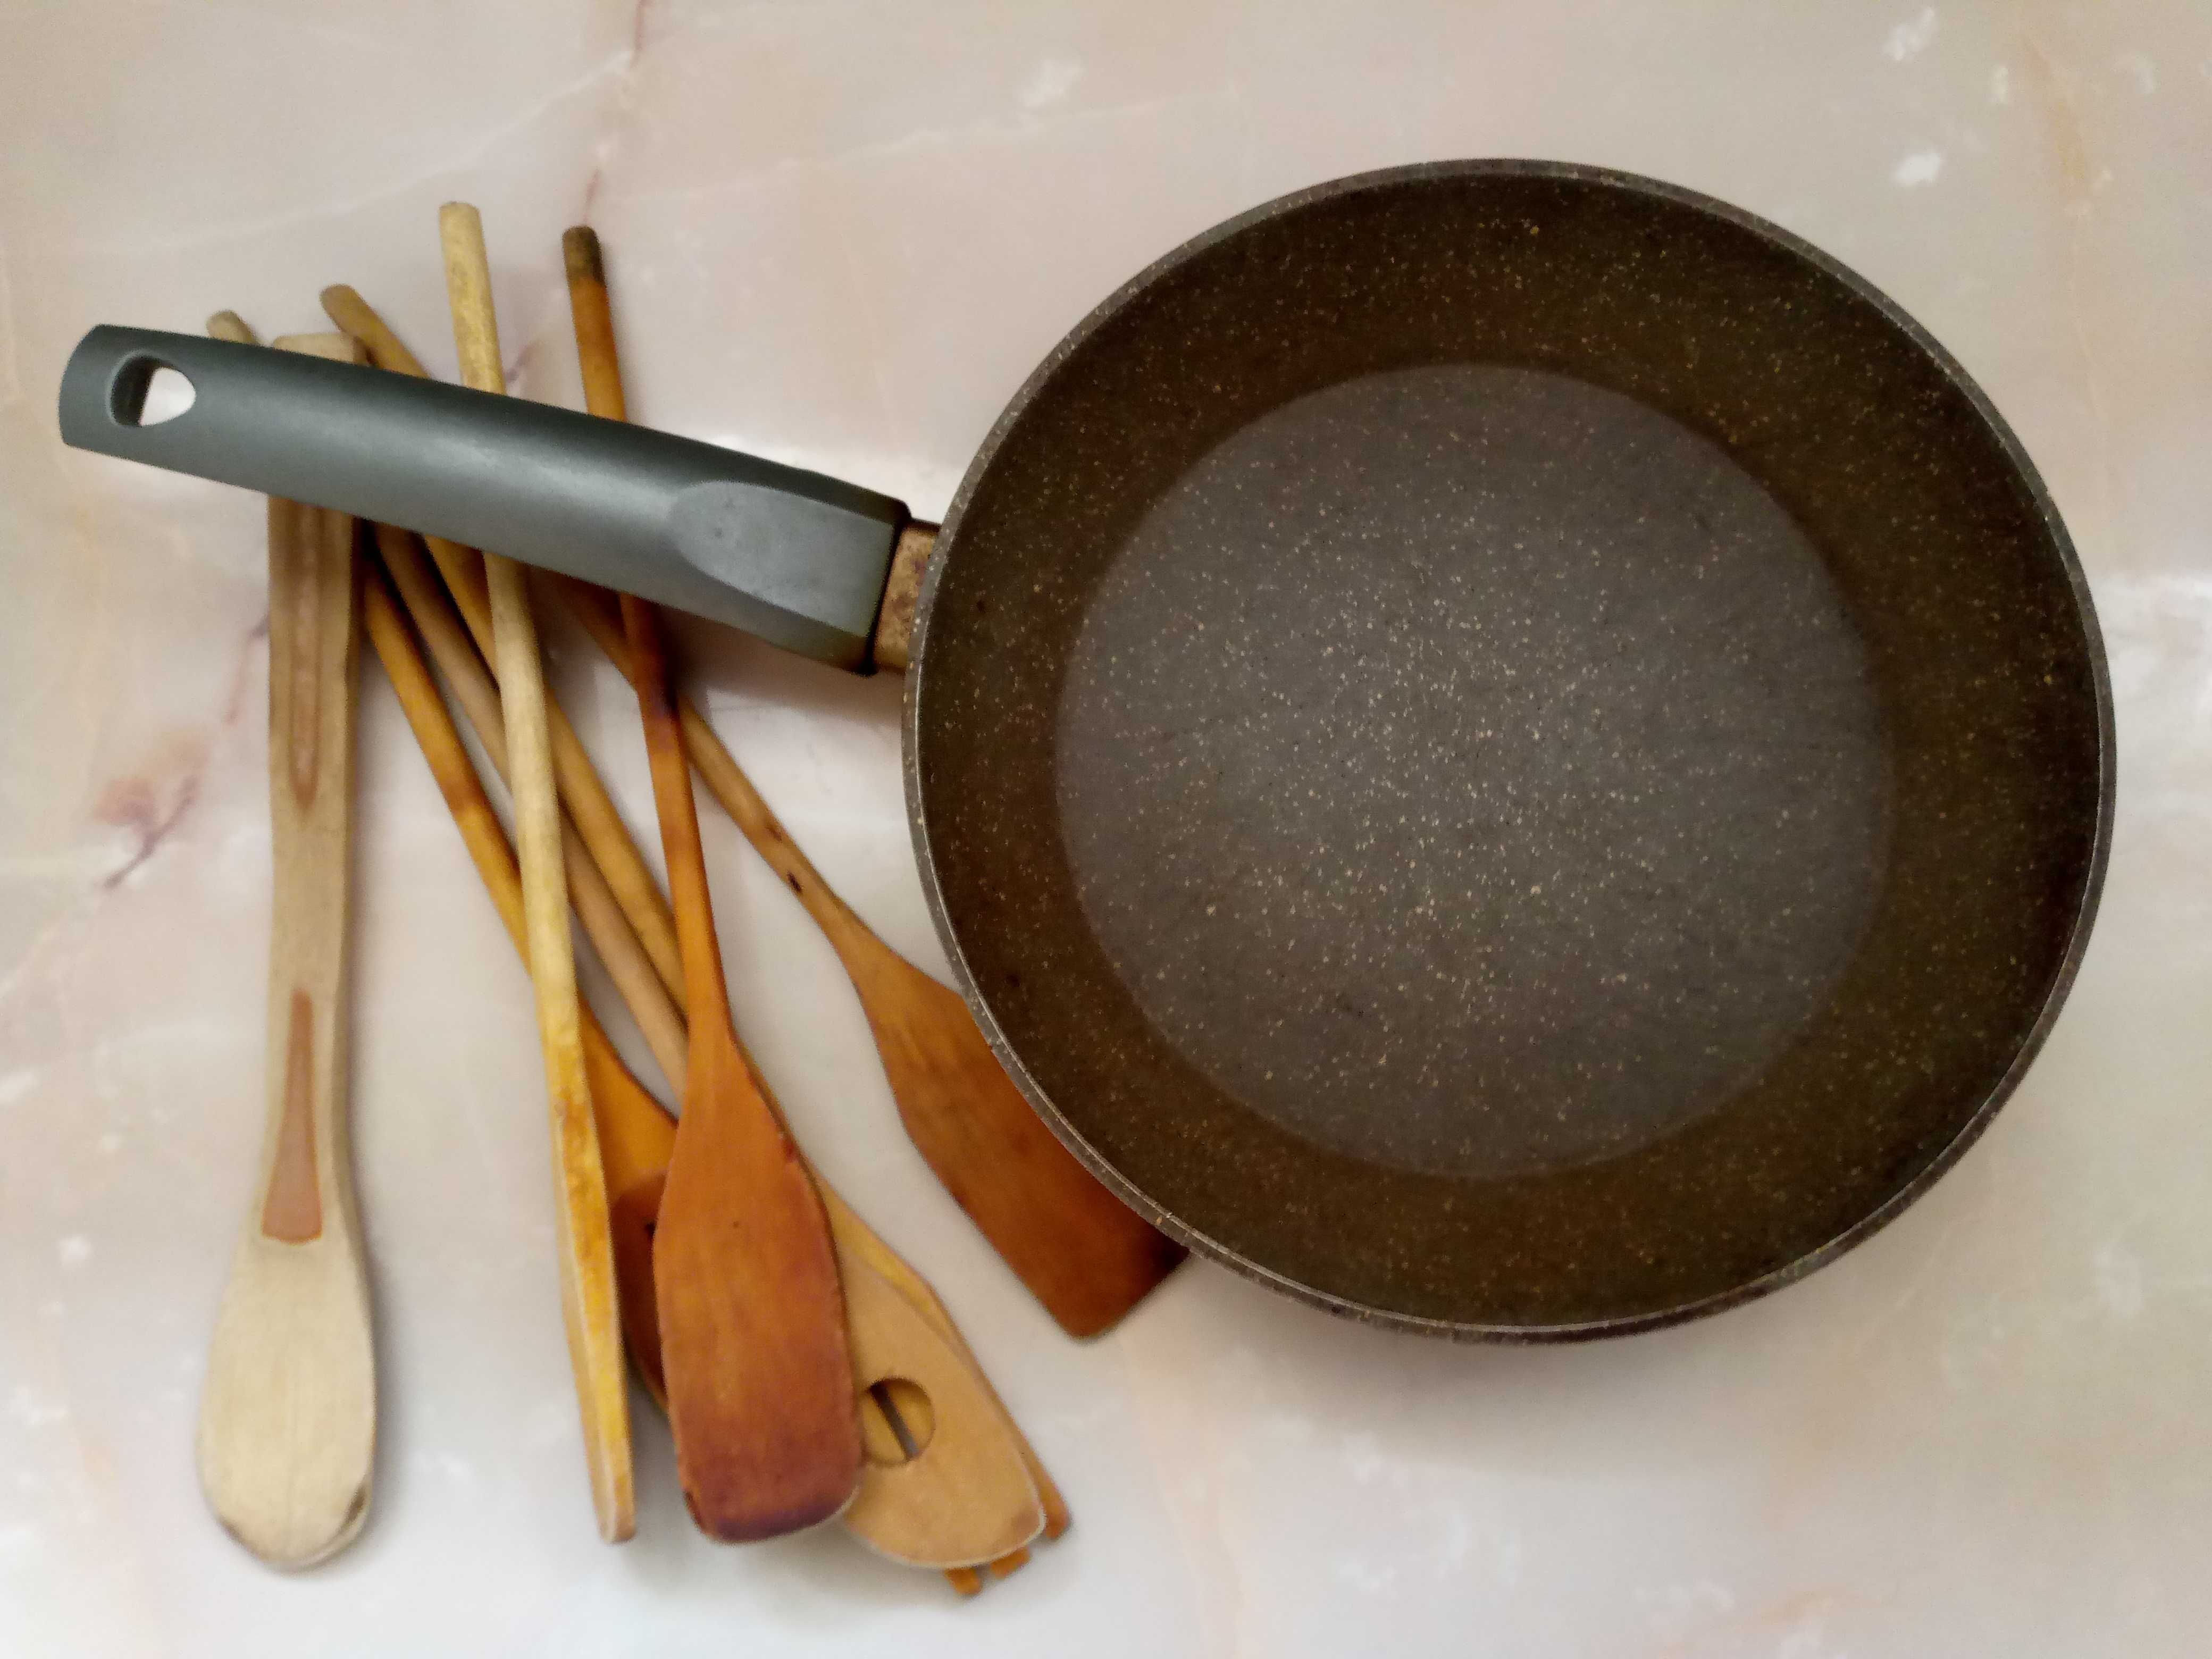 Антипригарная сковородка гранит с деревянным набором.Размер 24см